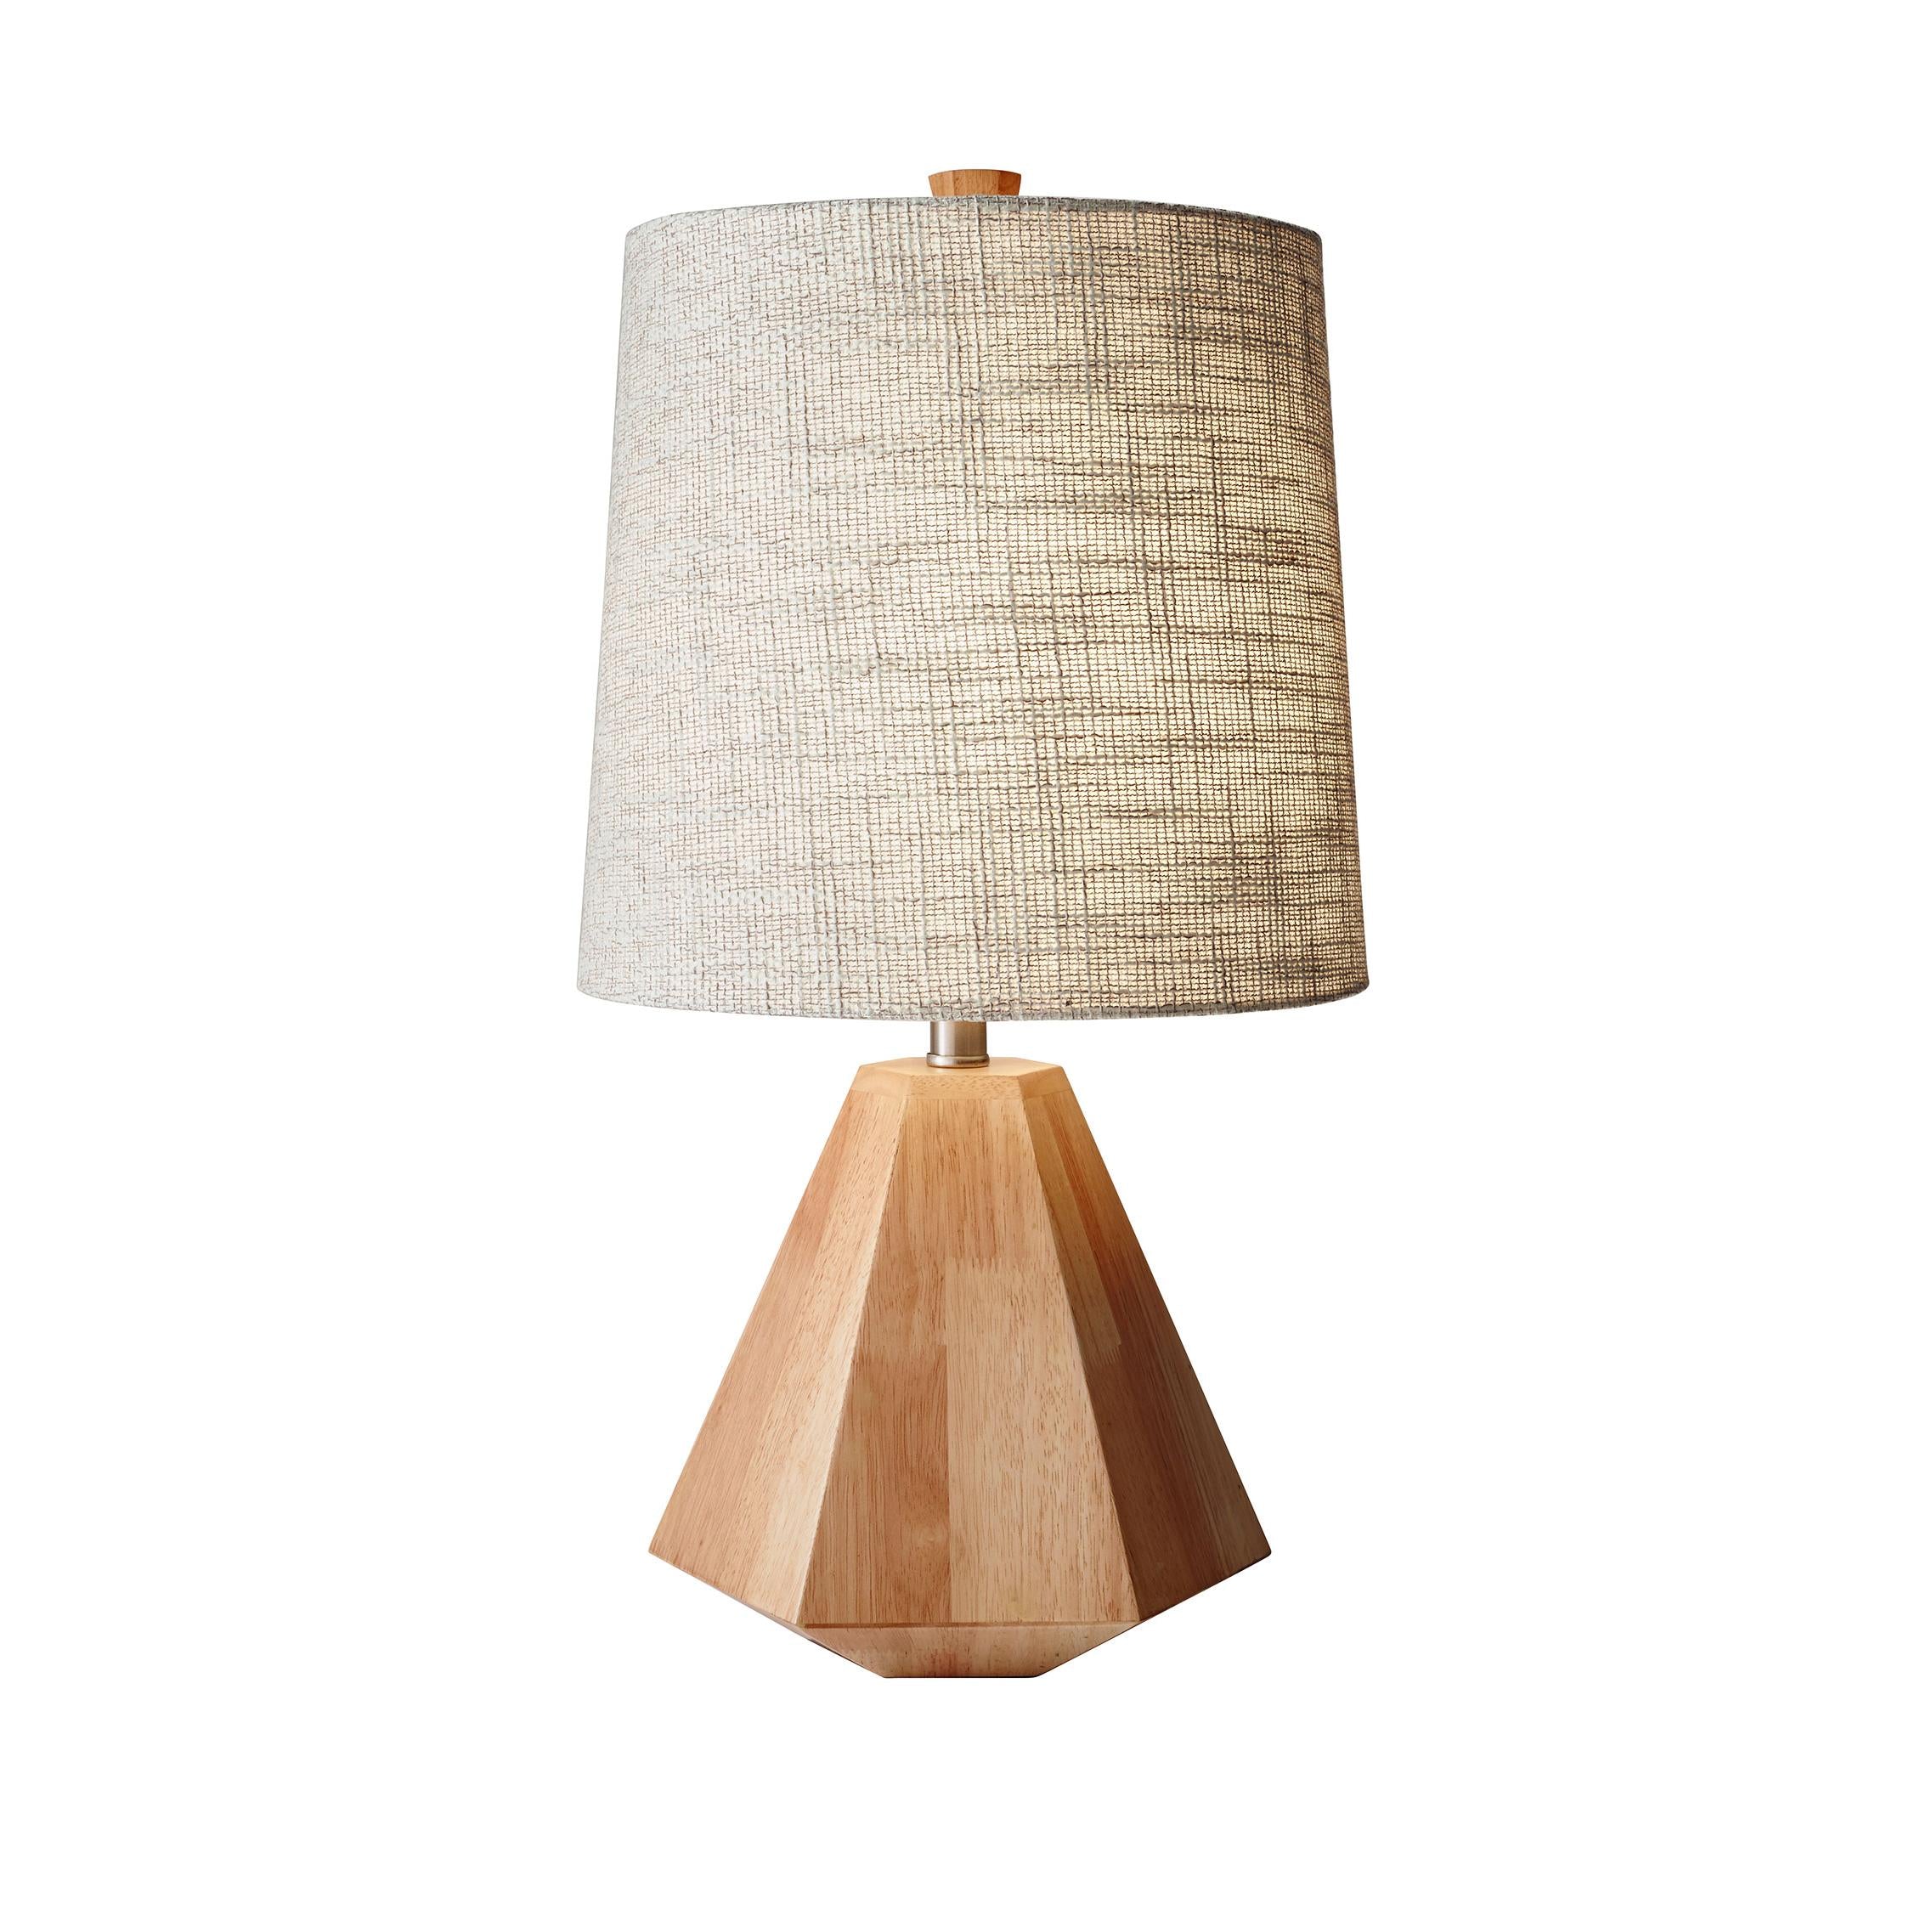 GRAYSON Lampe sur table Bois - 1508-12 | ADESSO